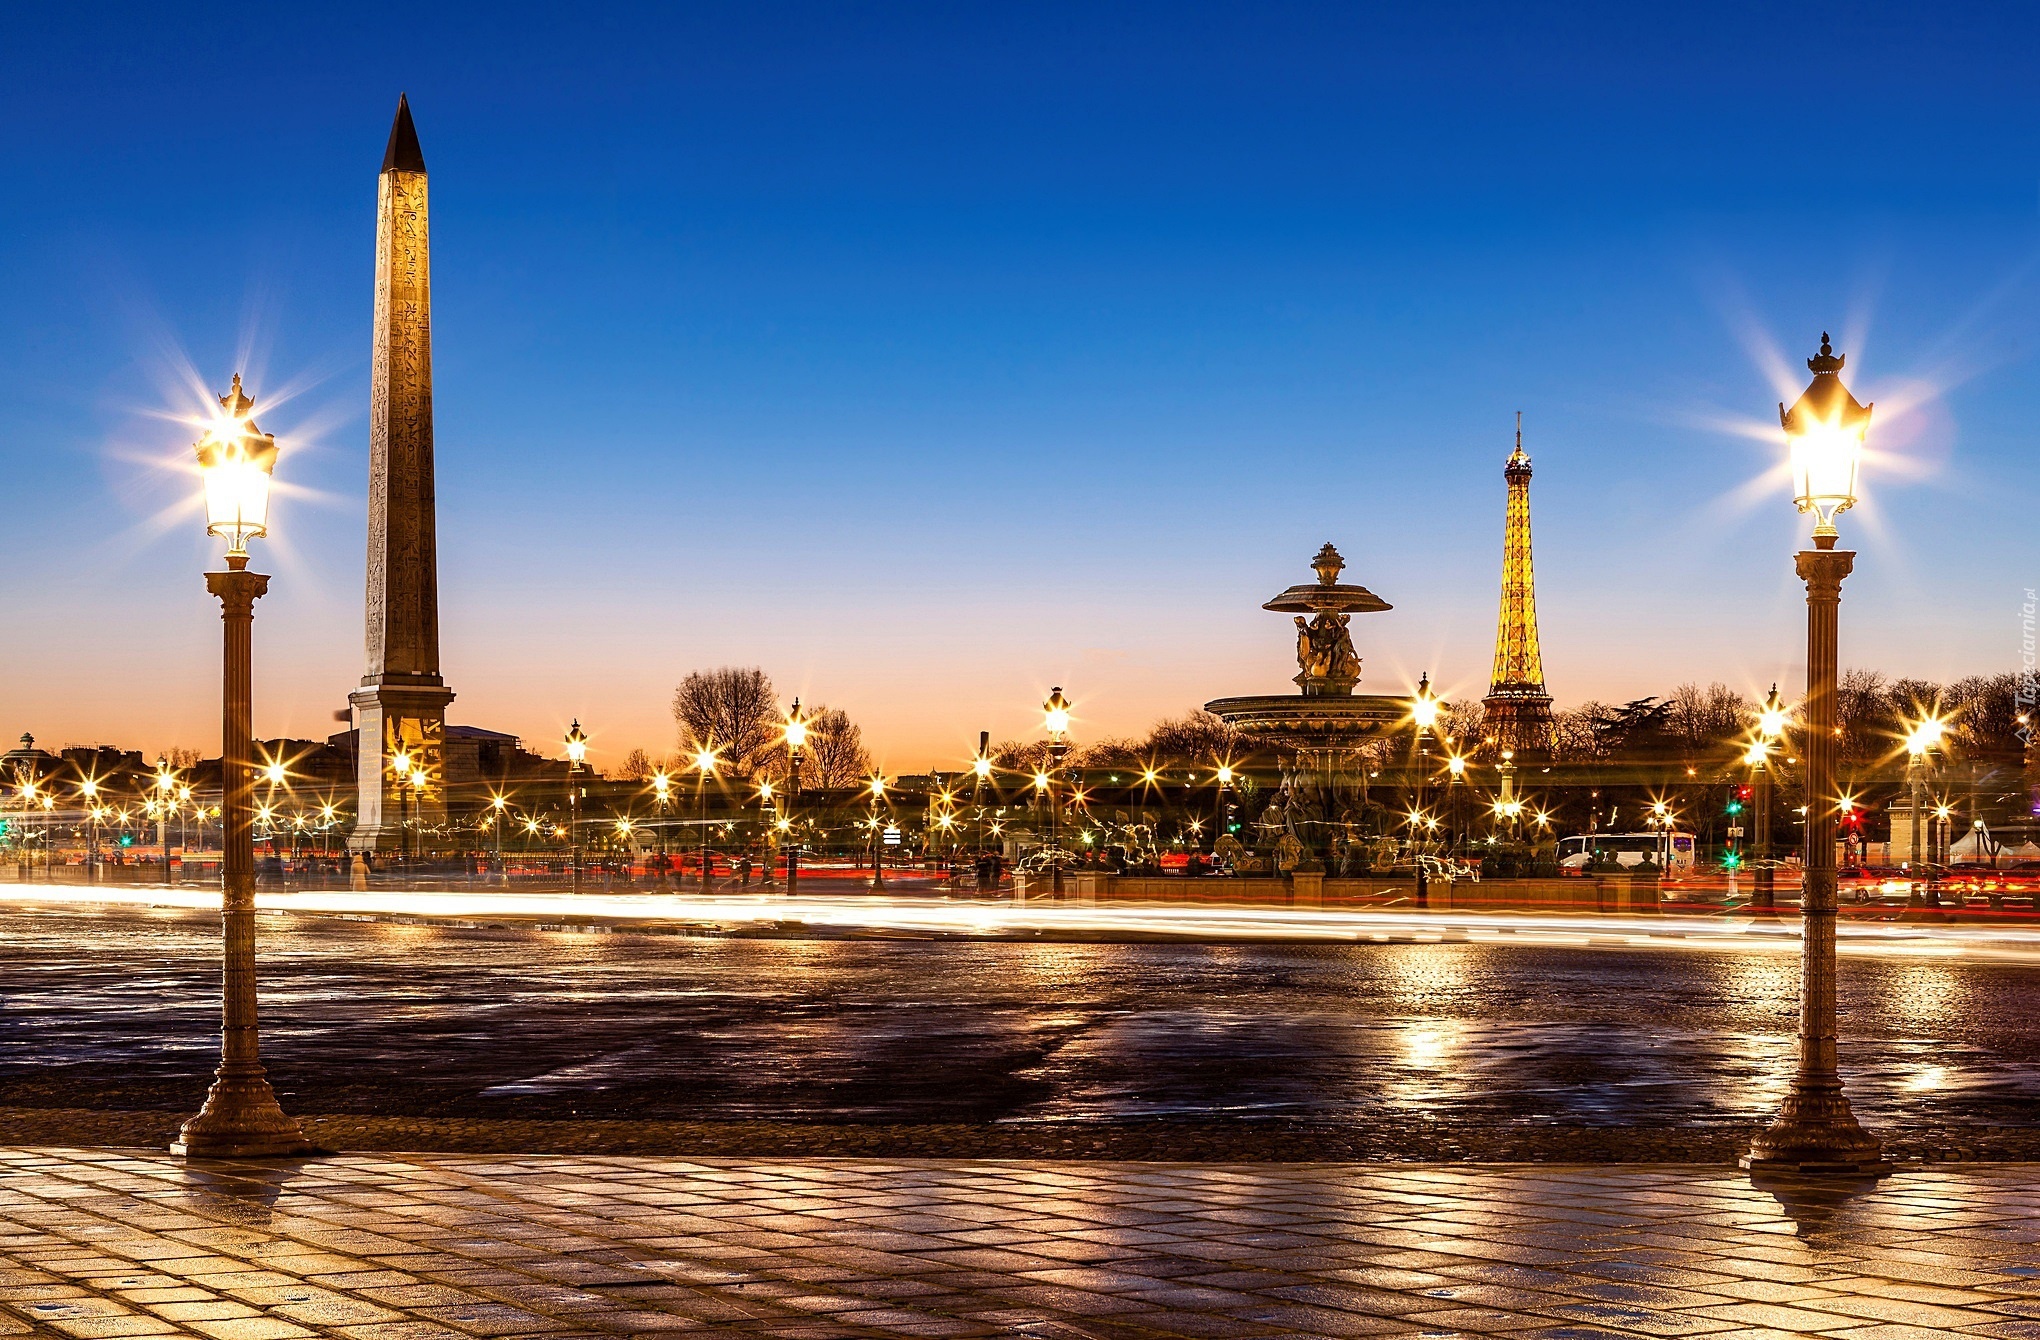 Paryż, Francja, Plac de la Concorde, Obelisk, Wieża Eiffla